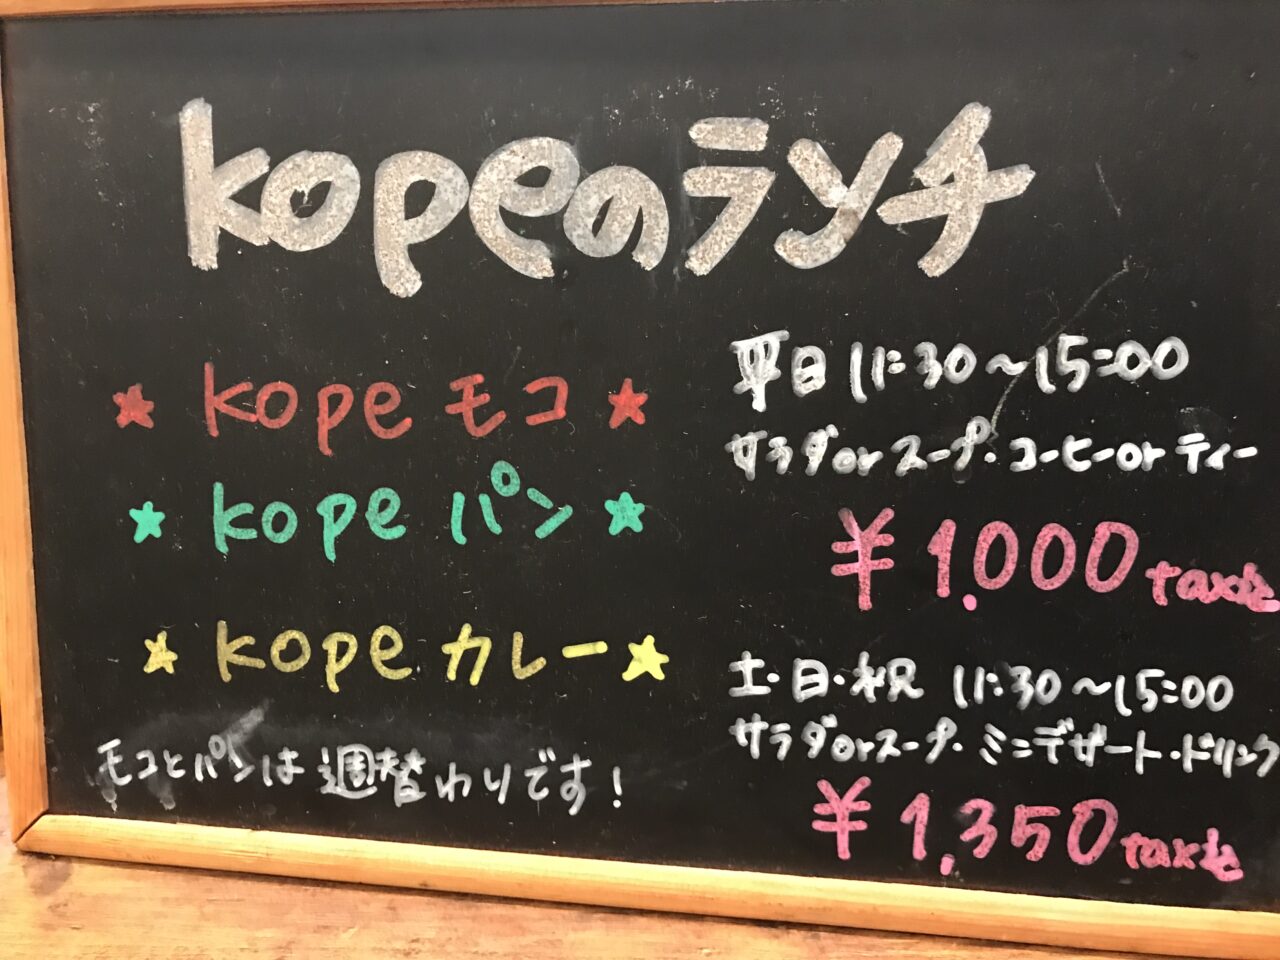 kope_menu1